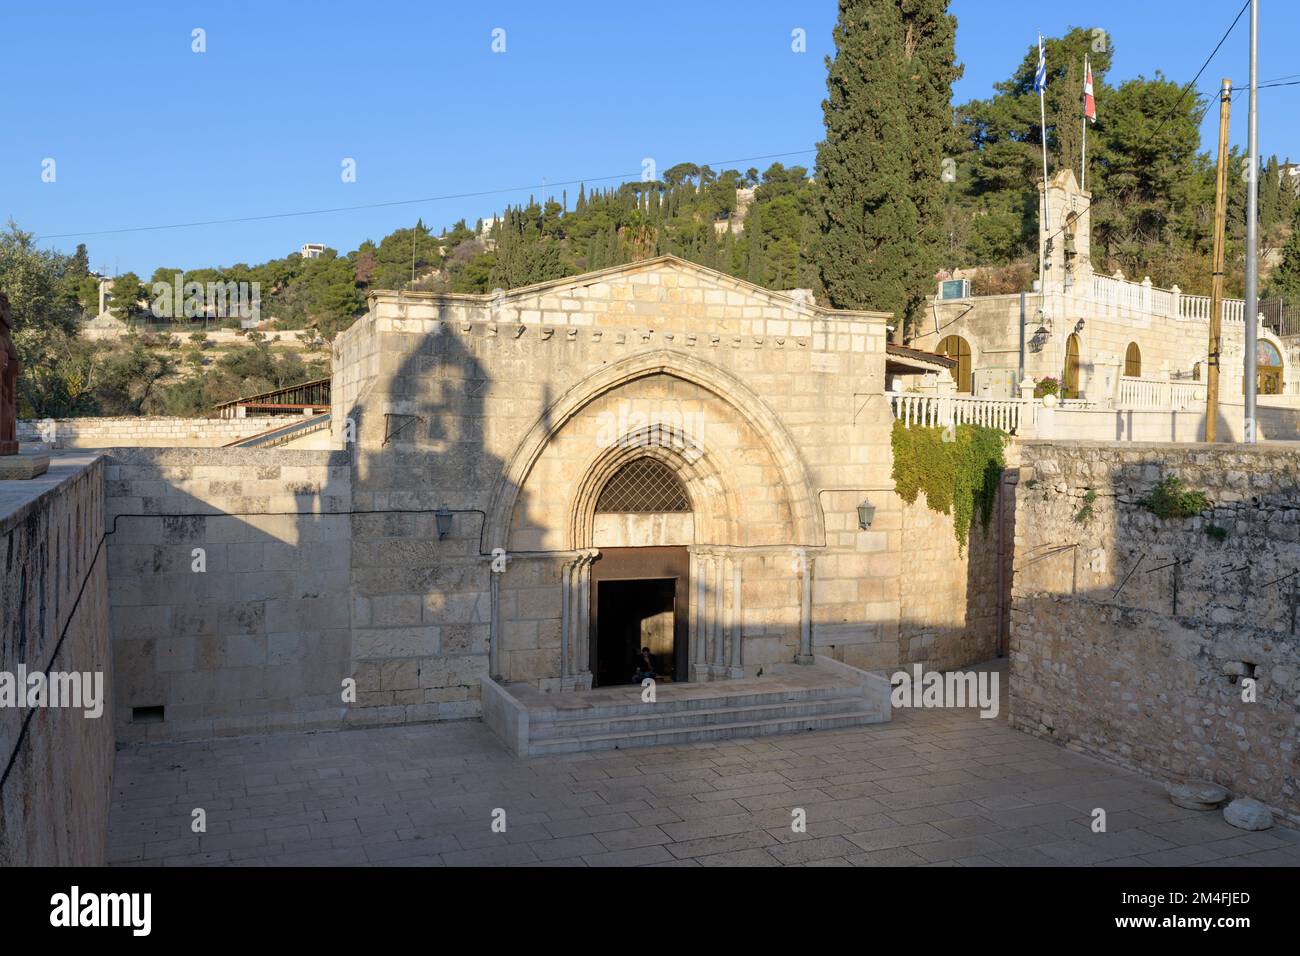 Tombe de la Vierge Marie ou église du Sépulcre de Sainte Marie. Une tombe chrétienne dans la vallée de Kidron. Mont des oliviers, Jérusalem, Israël Banque D'Images